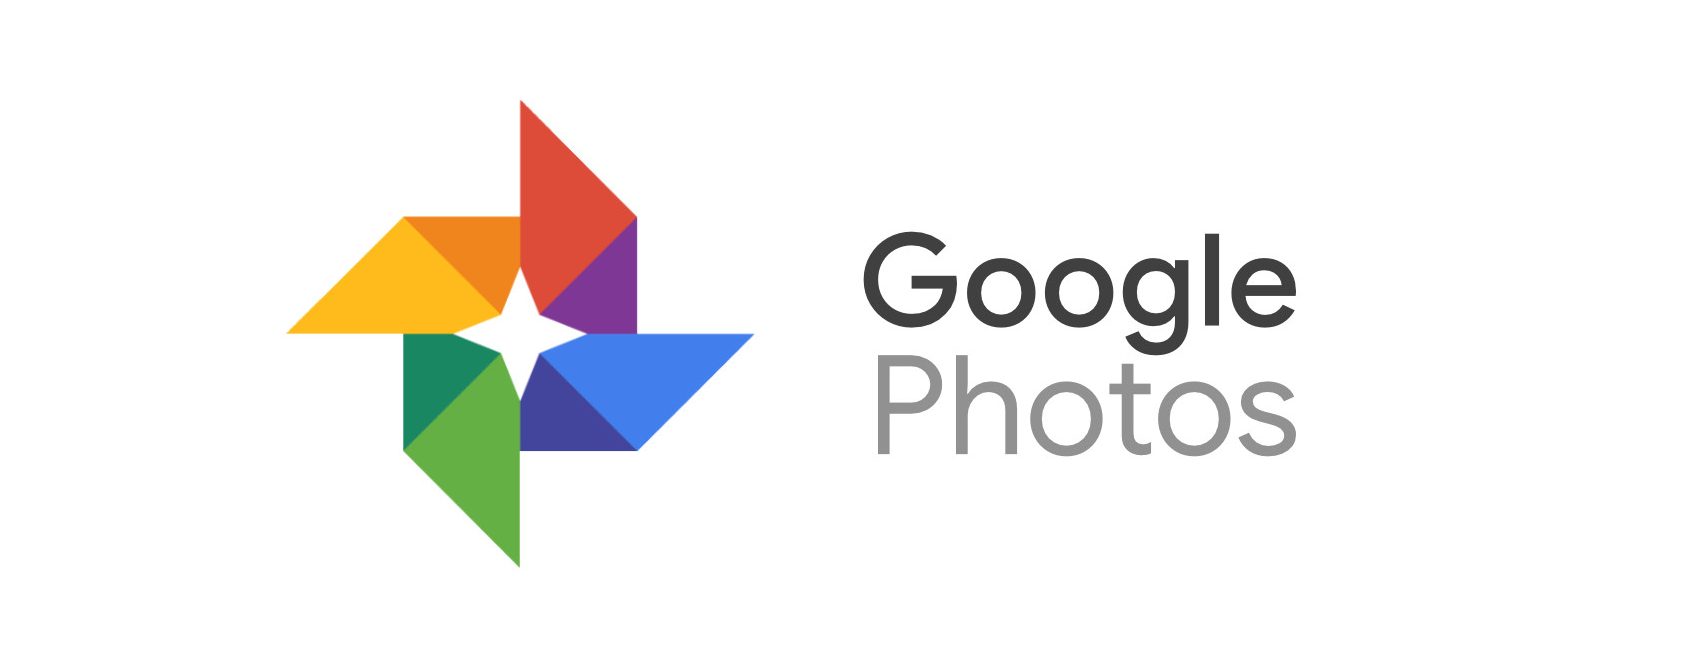 Google представя нова услуга, която избира и отпечатва от приложението ви Google Photos